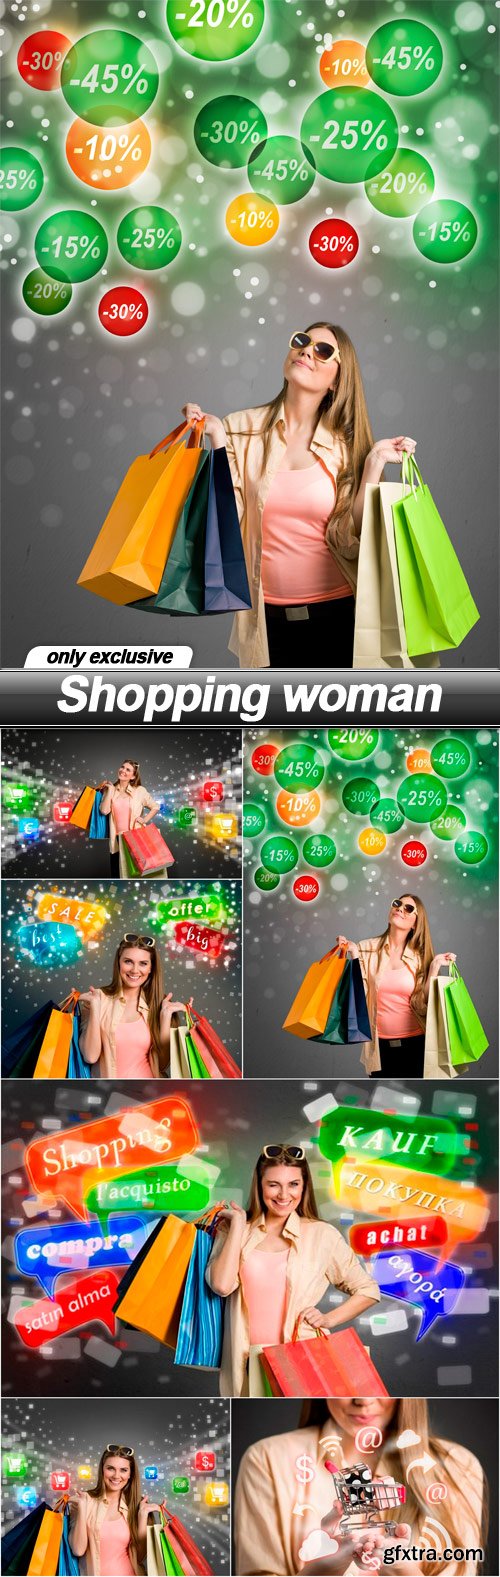 Shopping woman - 6 UHQ JPEG